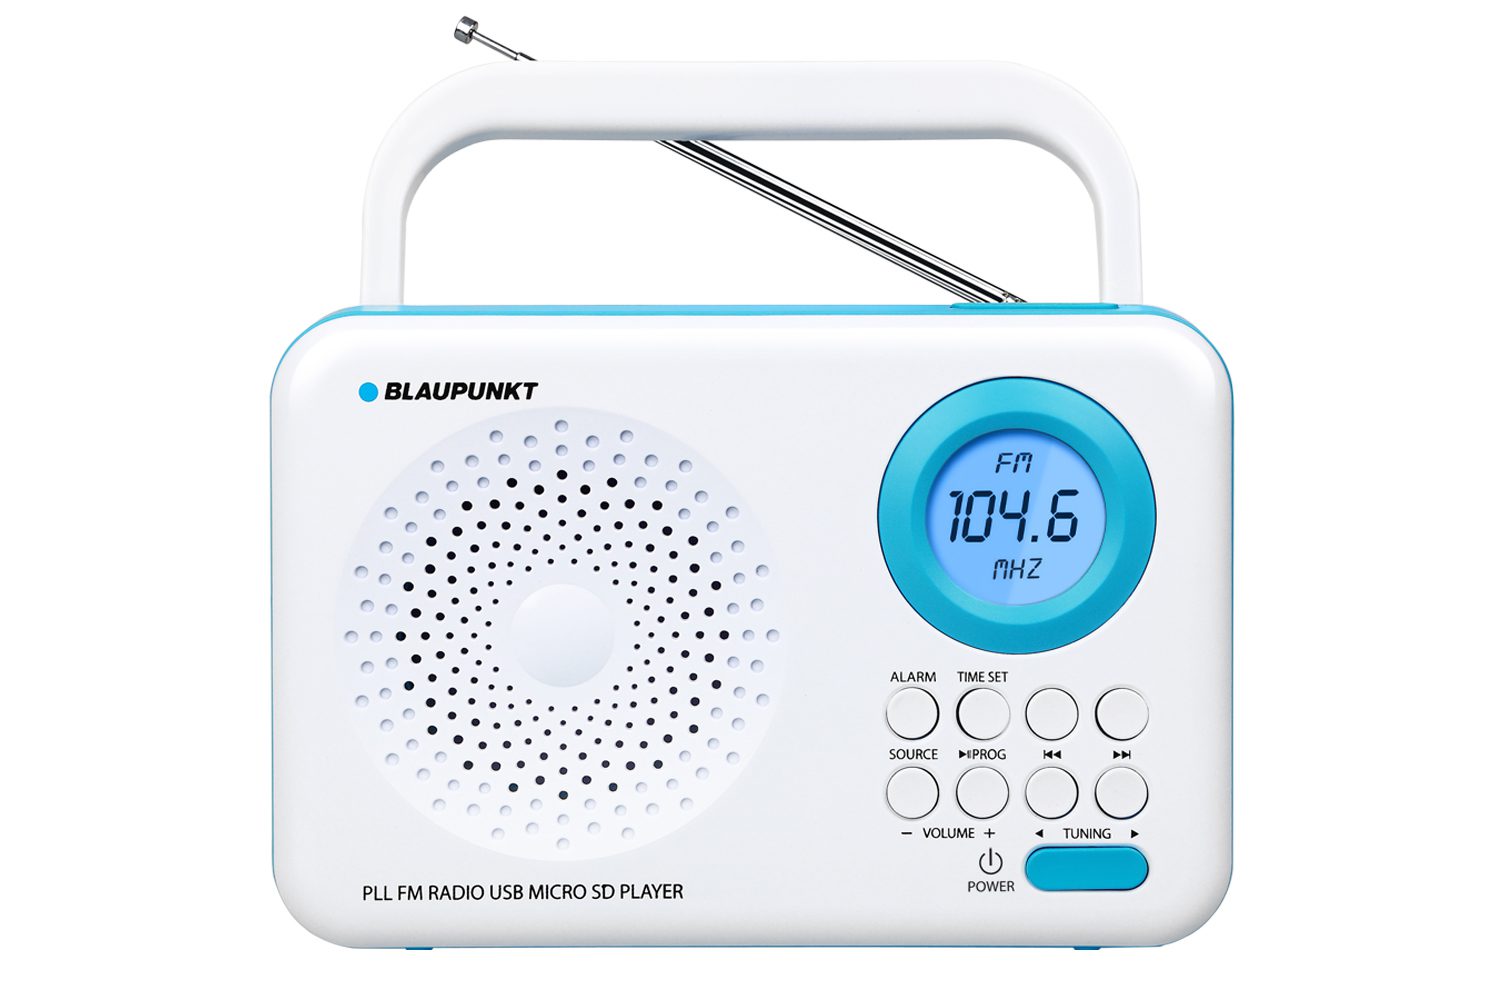 Blaupunkt Blp2400 Radio Despertador Digital Con Bluetooth ( Sd, Aux In, Fm)  Altavoz Inalámbrico, Micrónfono, Función Manos Libres, Batería 2200m Ah,  Alarma